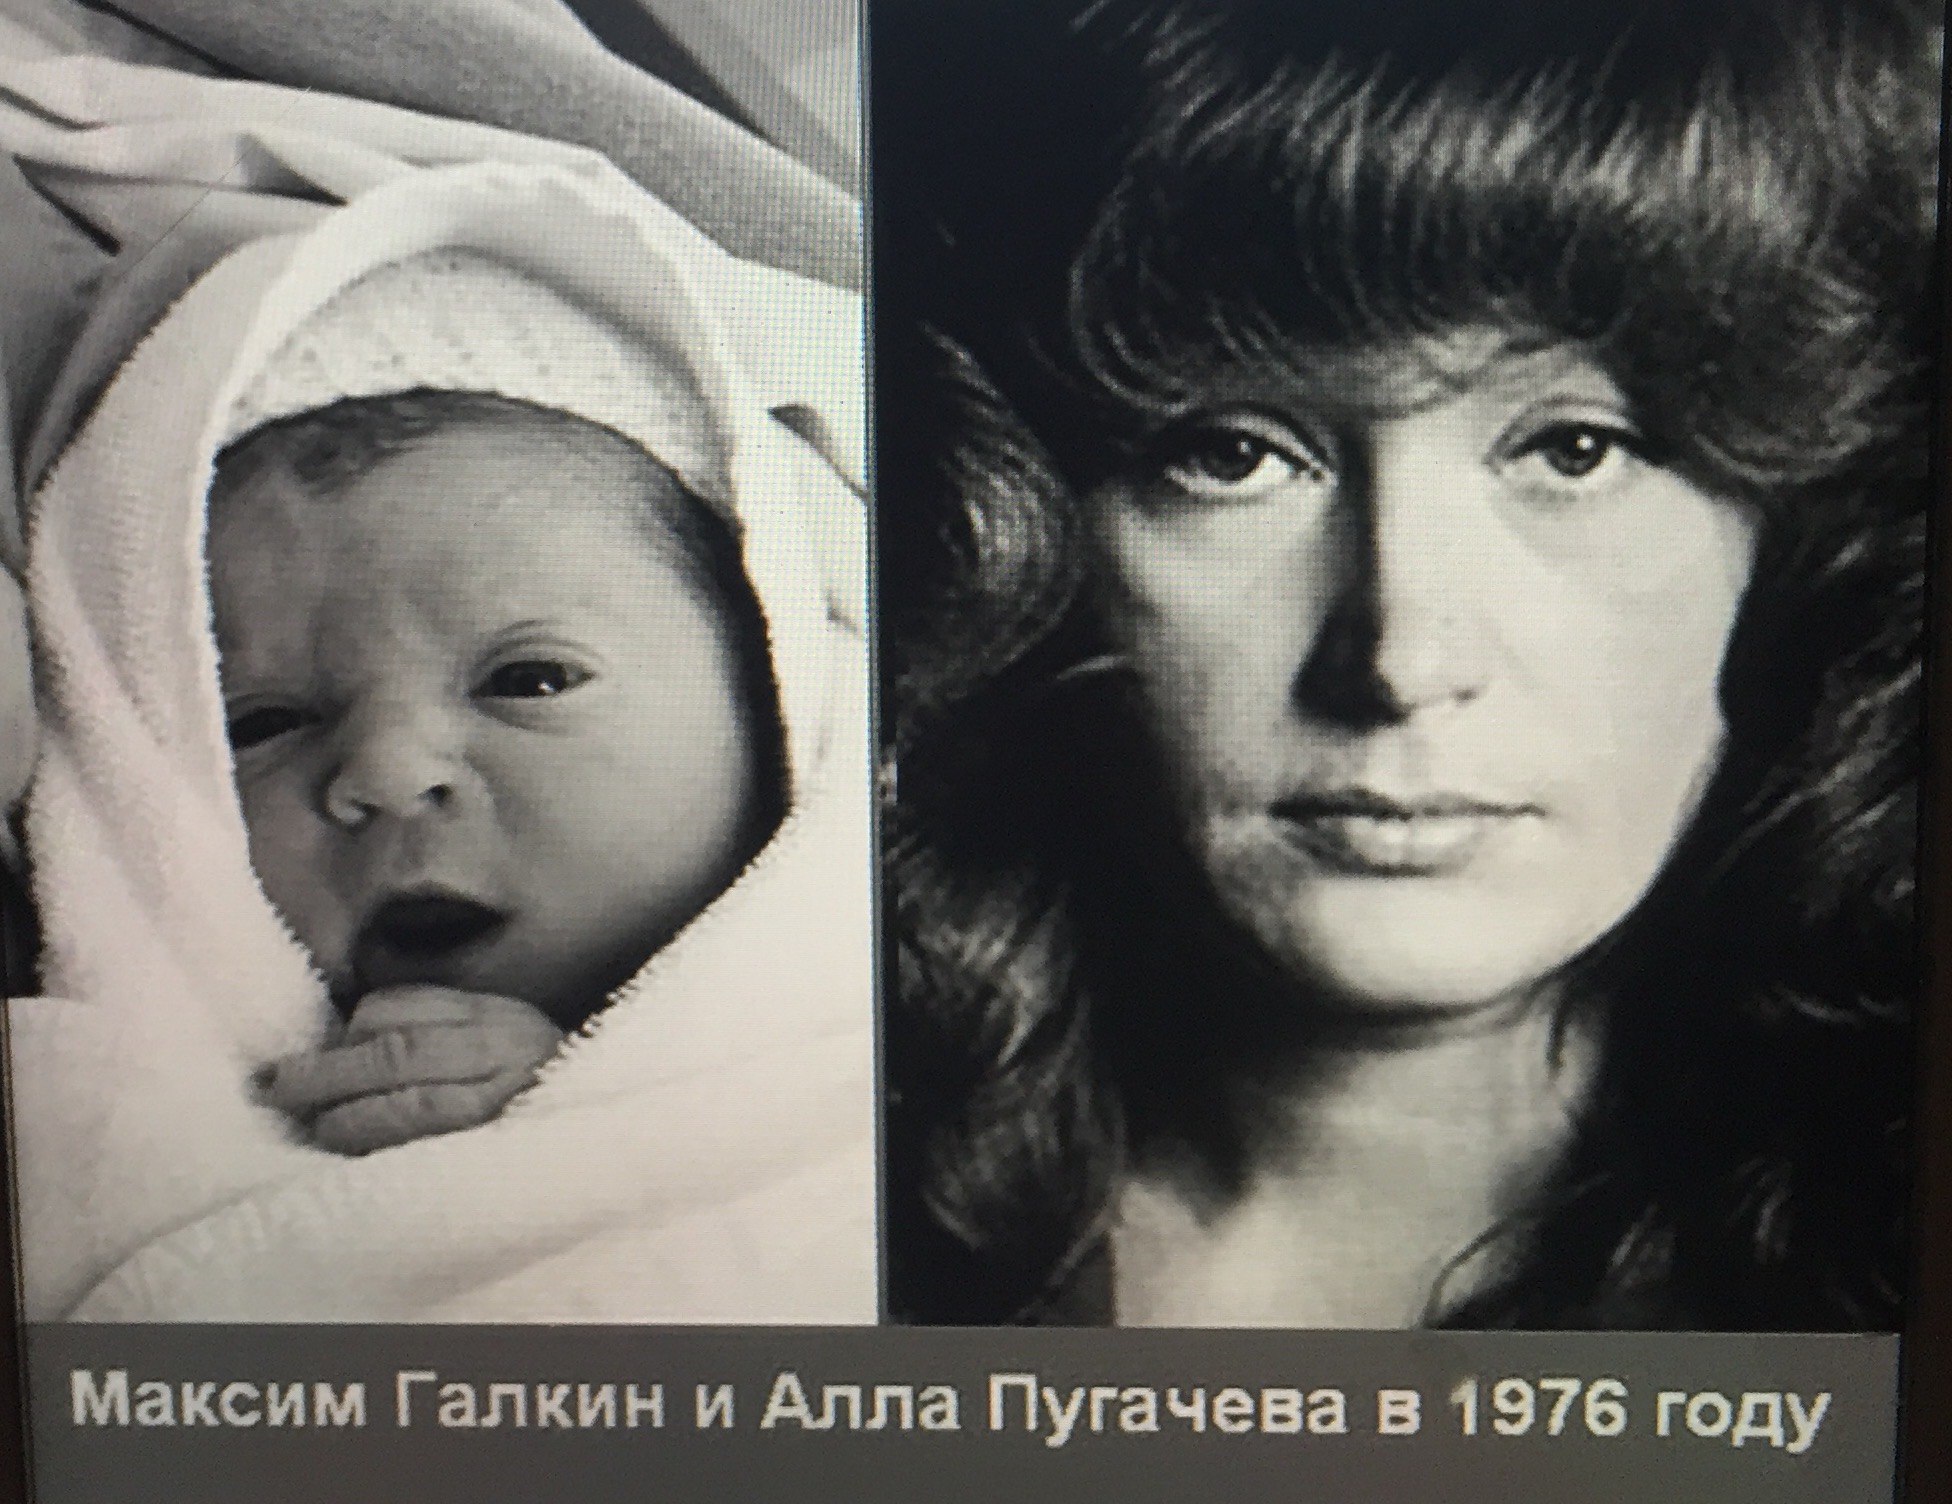 Галкин и Пугачева в молодости